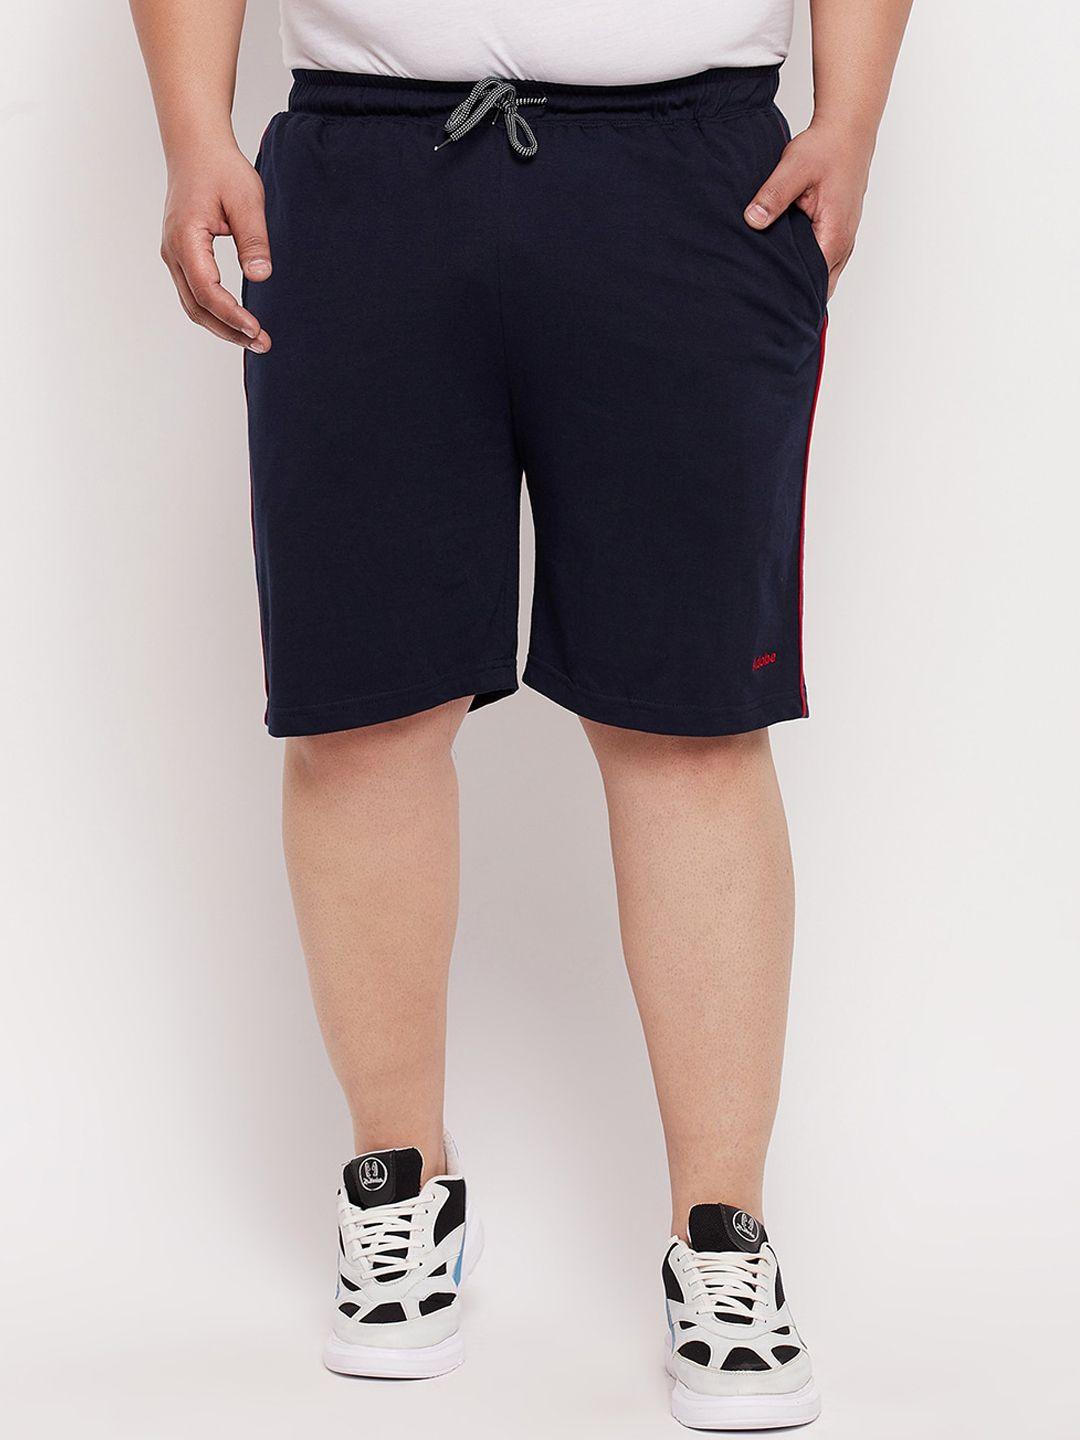 adobe-men-navy-blue-shorts